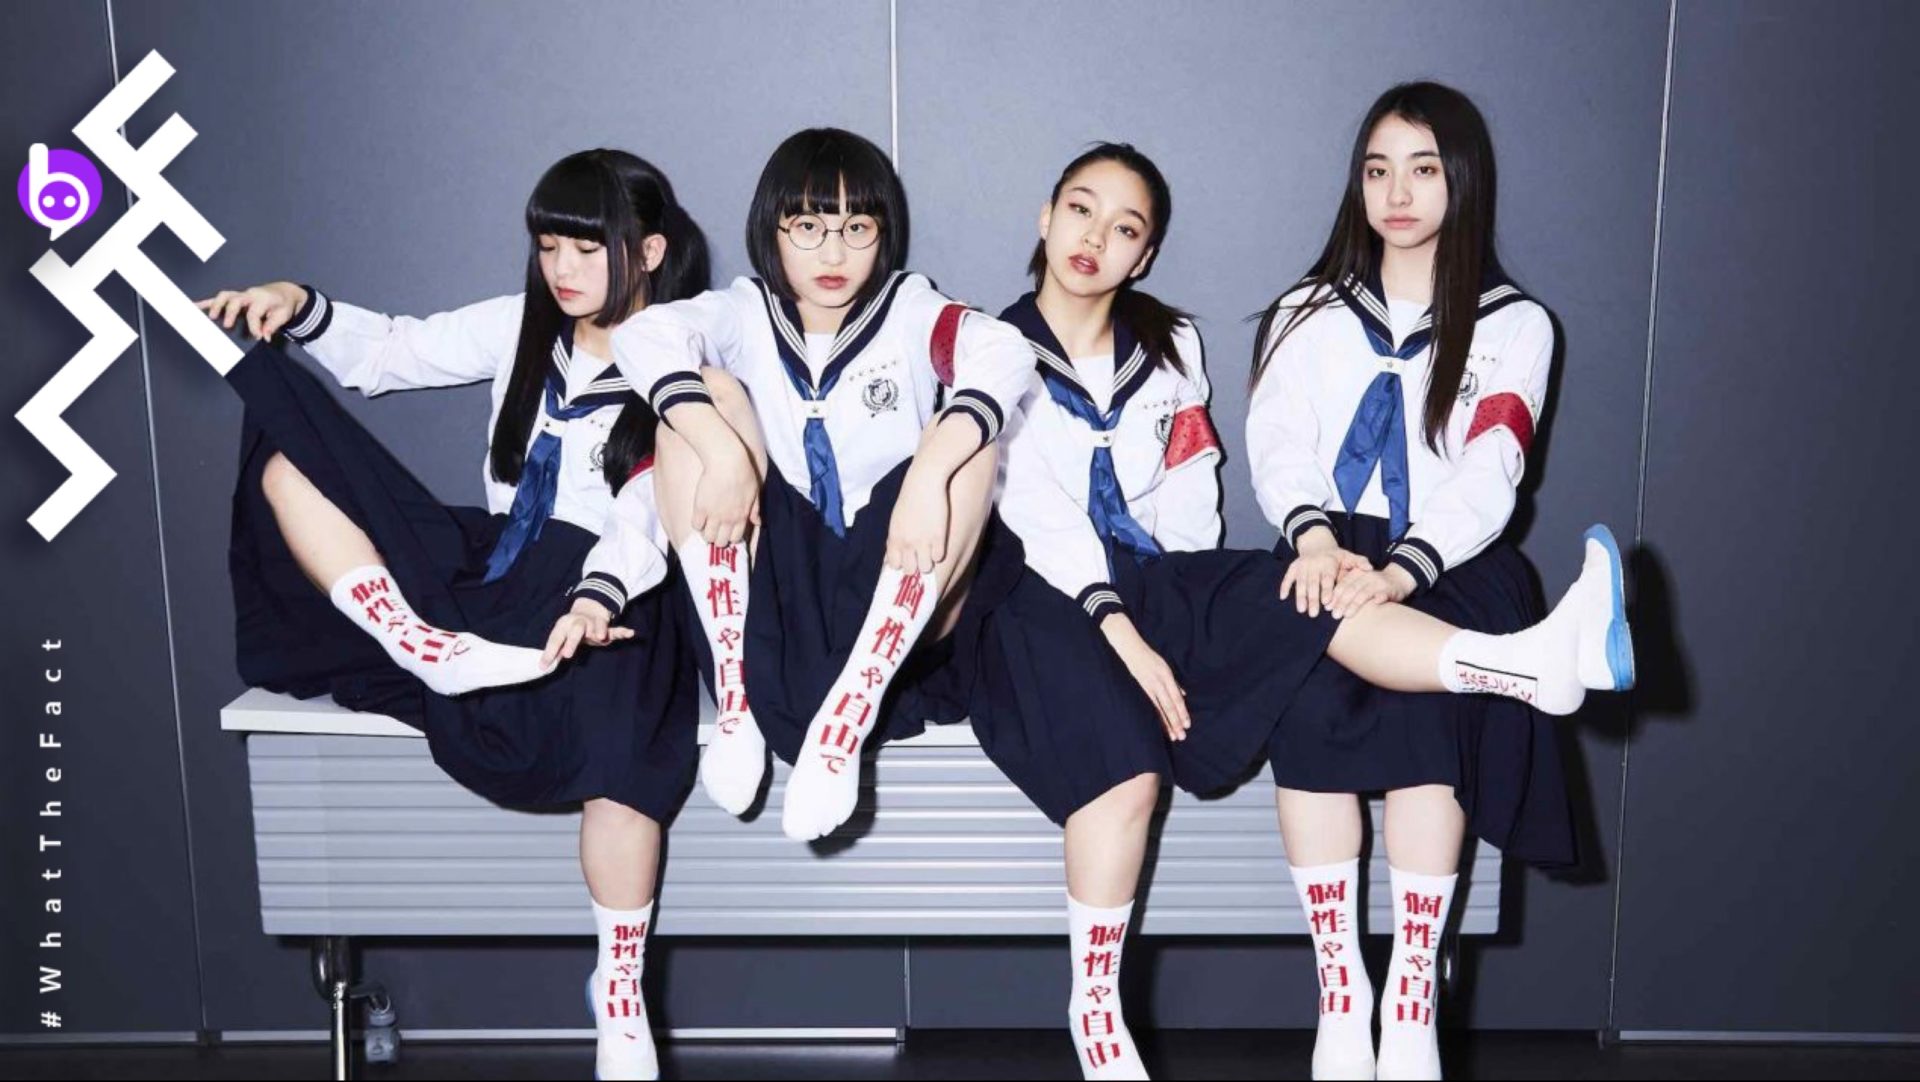 ‘ATARASHII GAKKO!’ 4 สาวสุดเพี้ยนในชุดนักเรียนญี่ปุ่น ผู้ ‘ขบถ’ ต่อสังคมด้วยการร้องและการเต้น